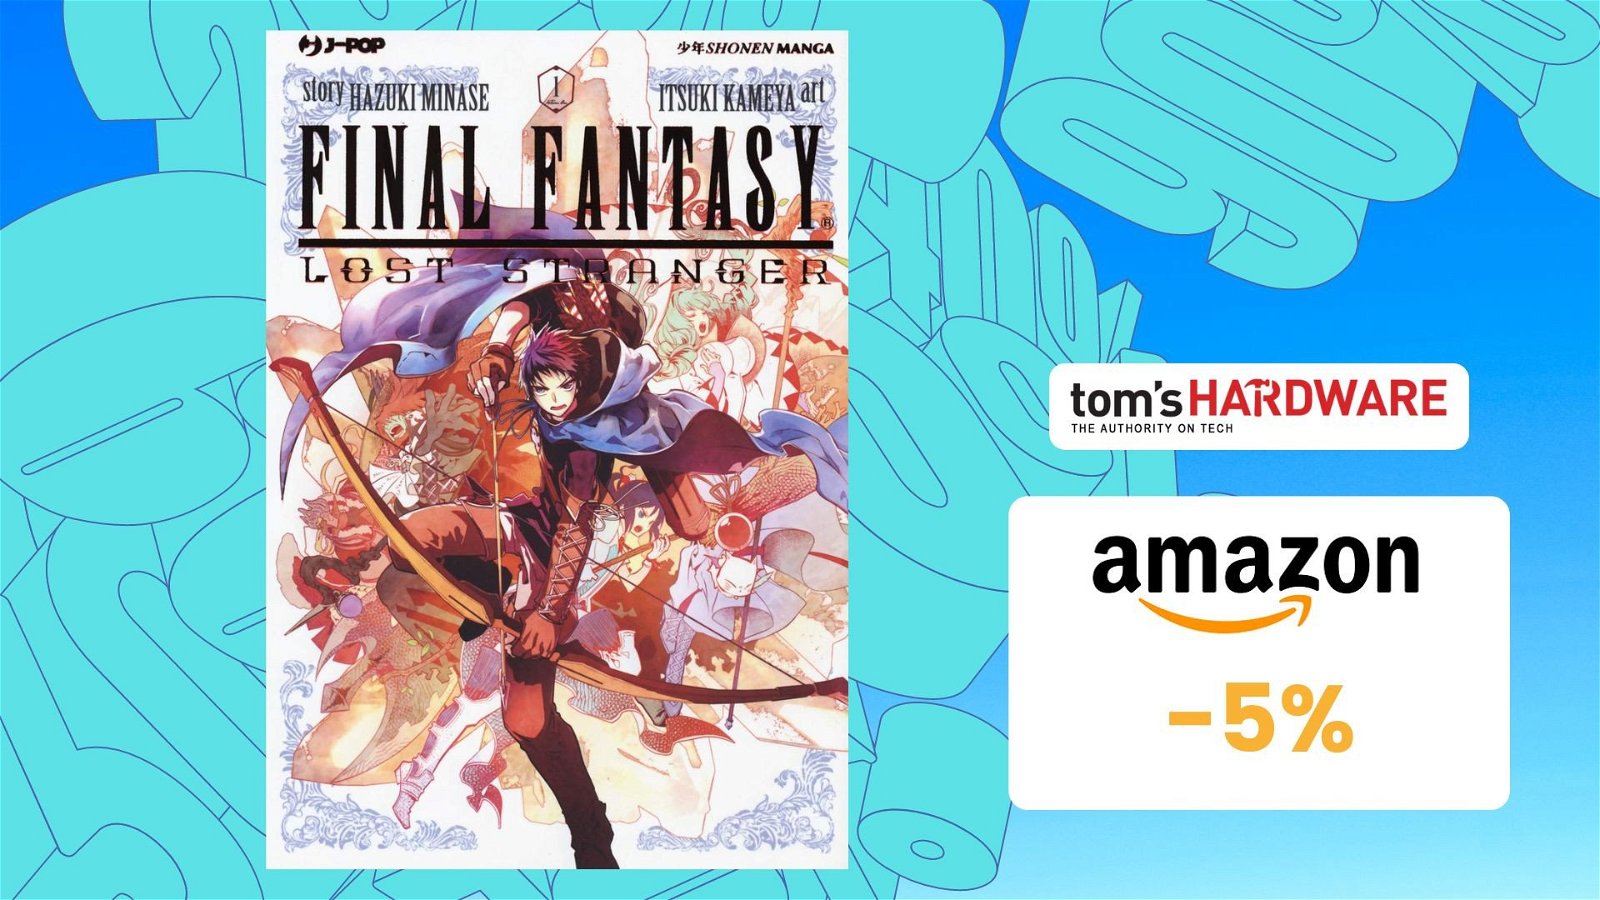 Immagine di Final Fantasy - Lost stranger (Vol. 1), su Amazon risparmi il 5%!